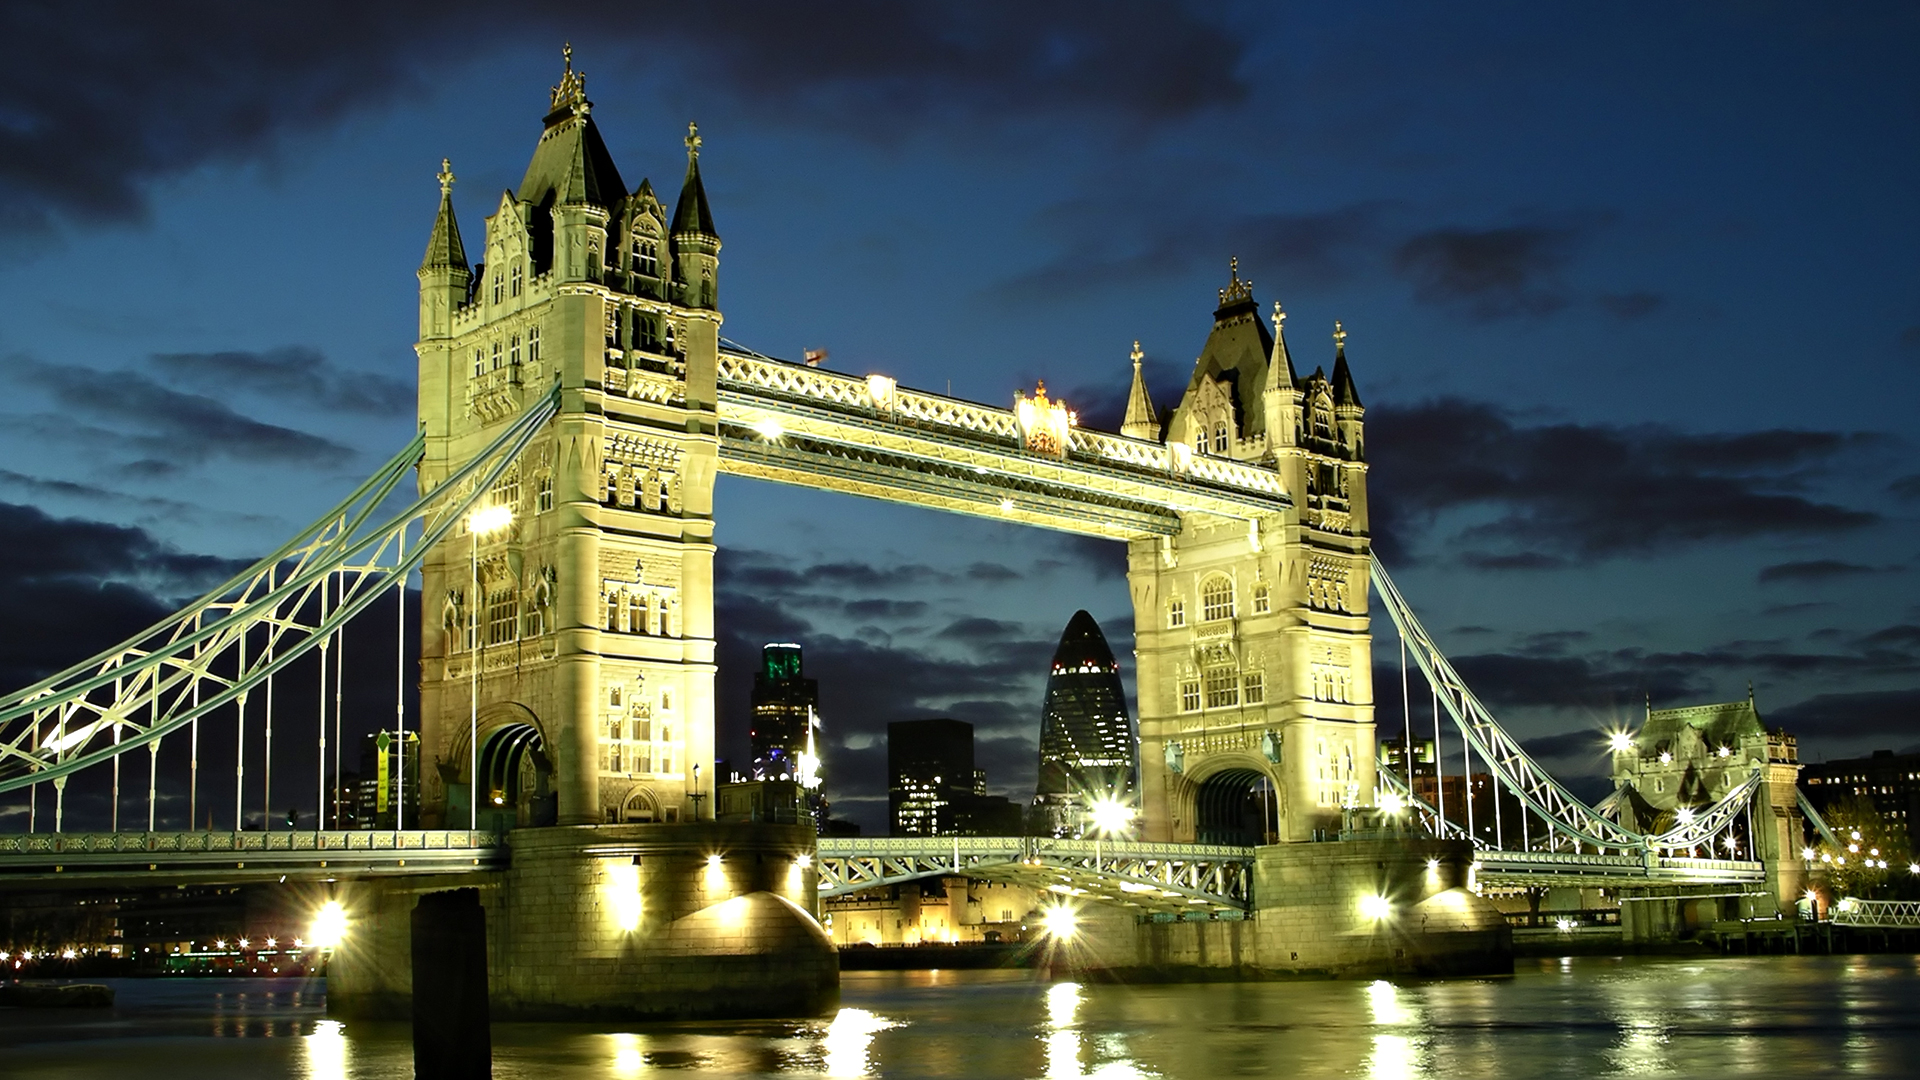 United Kingdom Bridge At Night Wallpaper